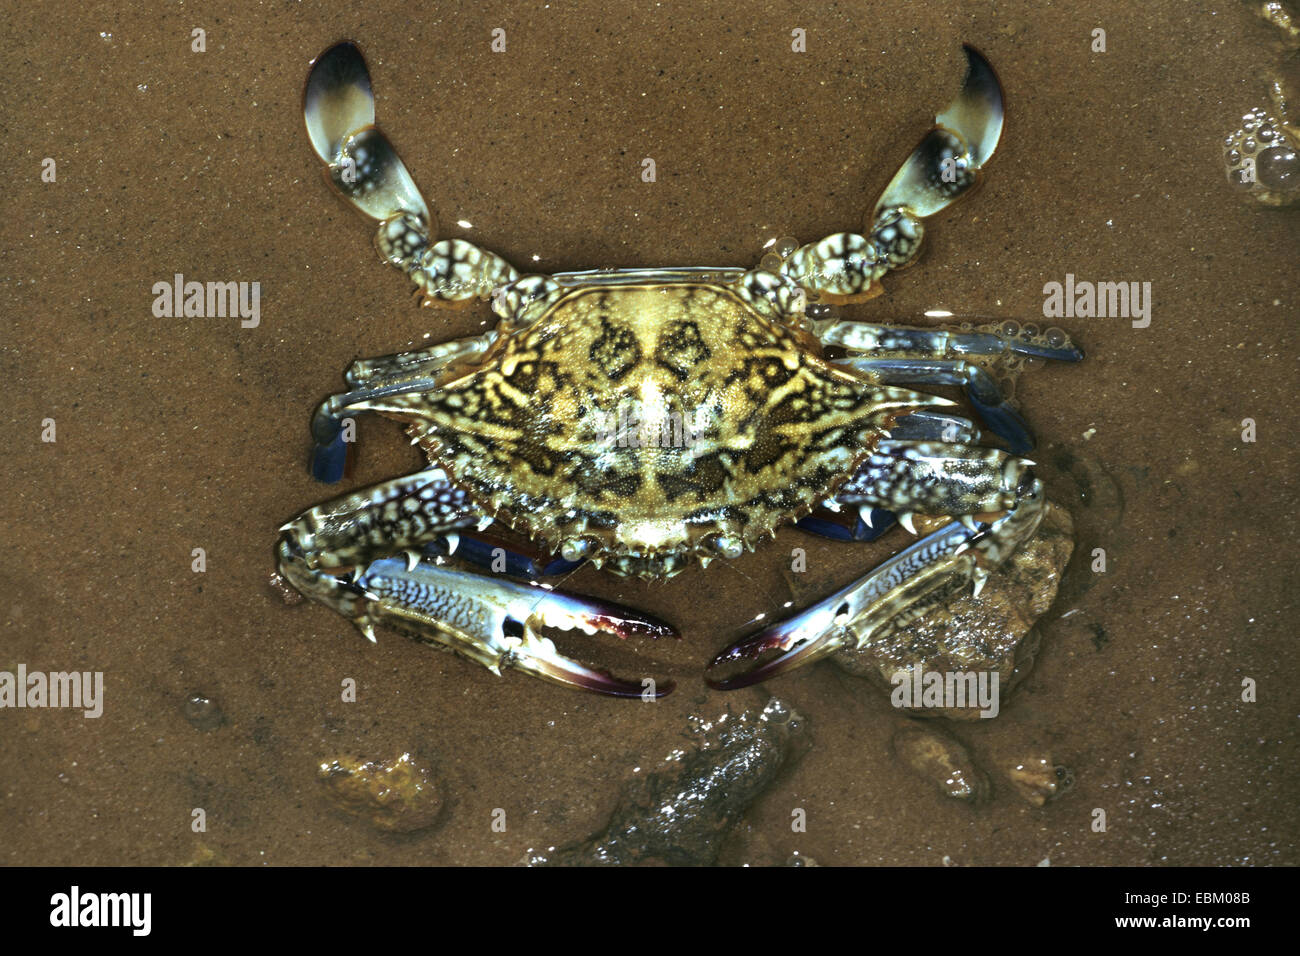 blue swimming crab, sand crab, pelagic swimming crab (Portunus pelagicus), in shallow water Stock Photo